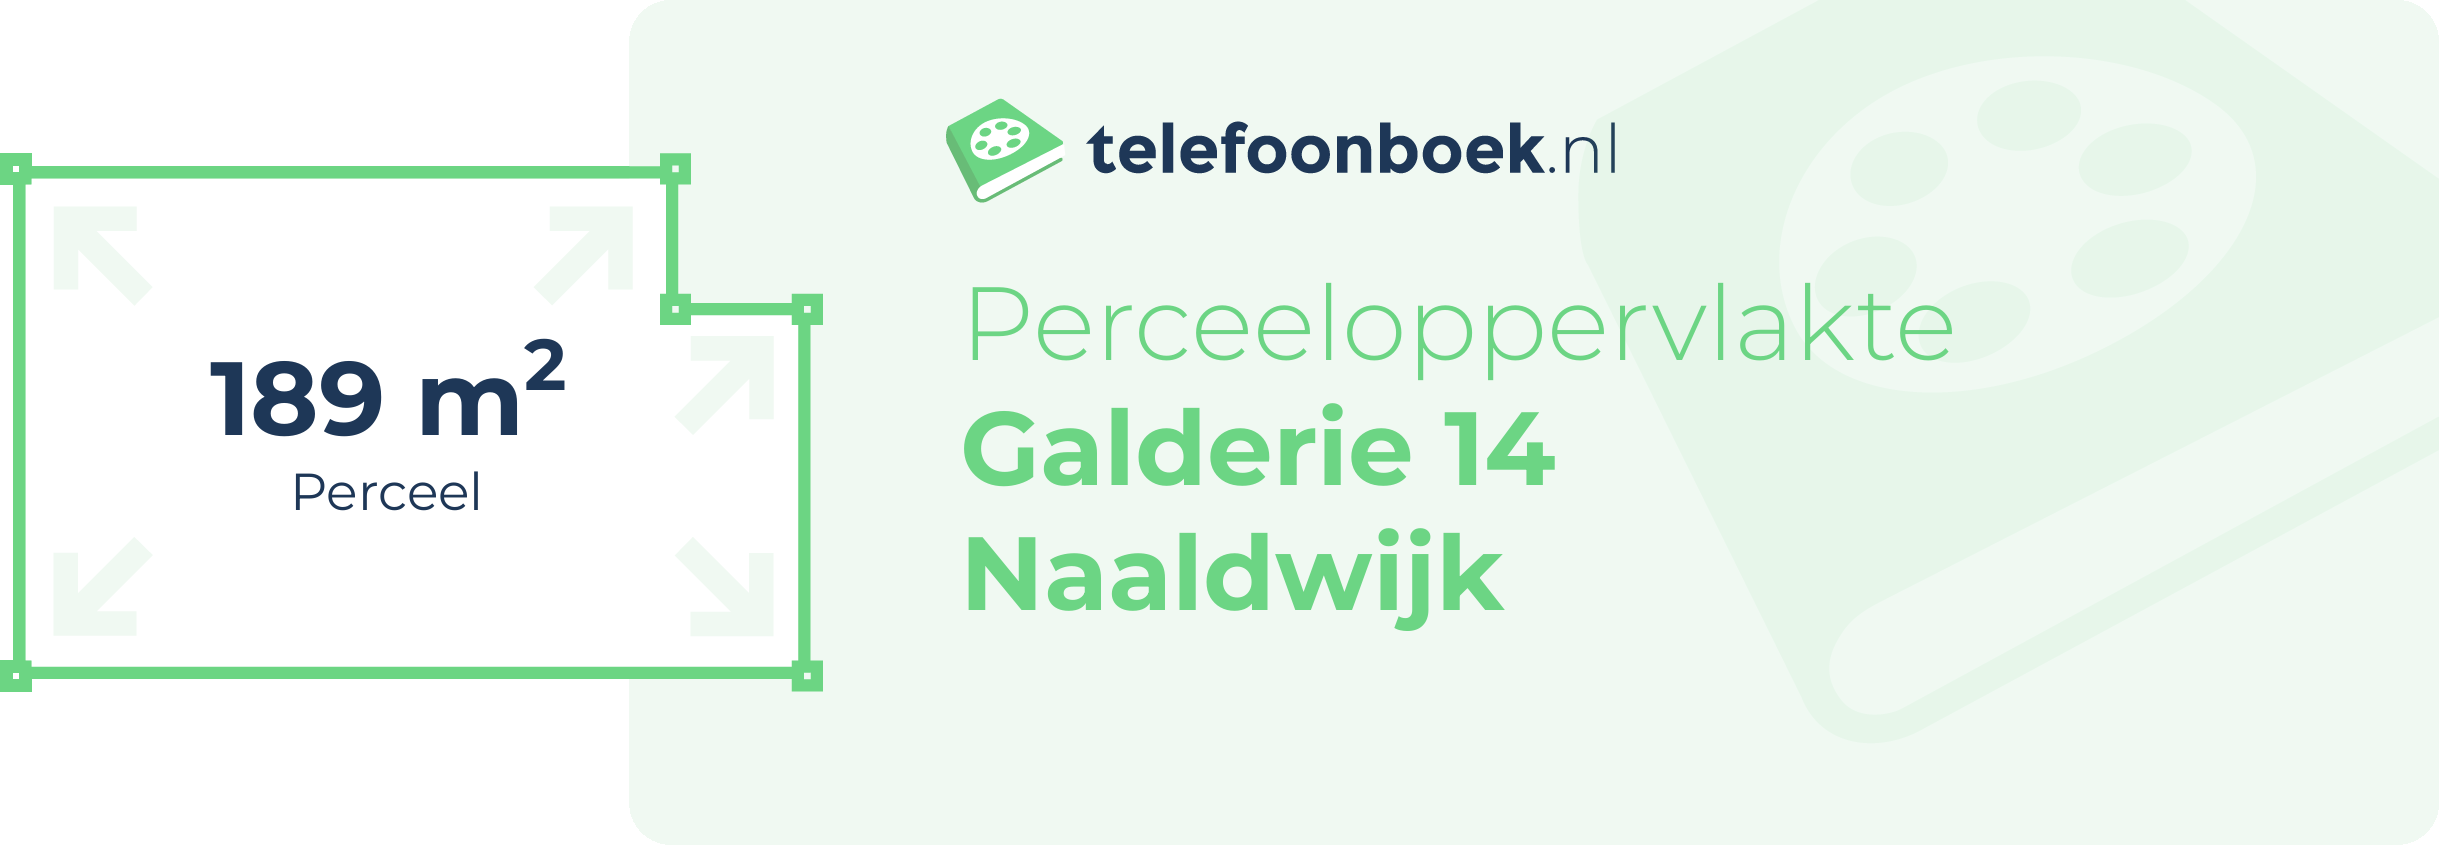 Perceeloppervlakte Galderie 14 Naaldwijk